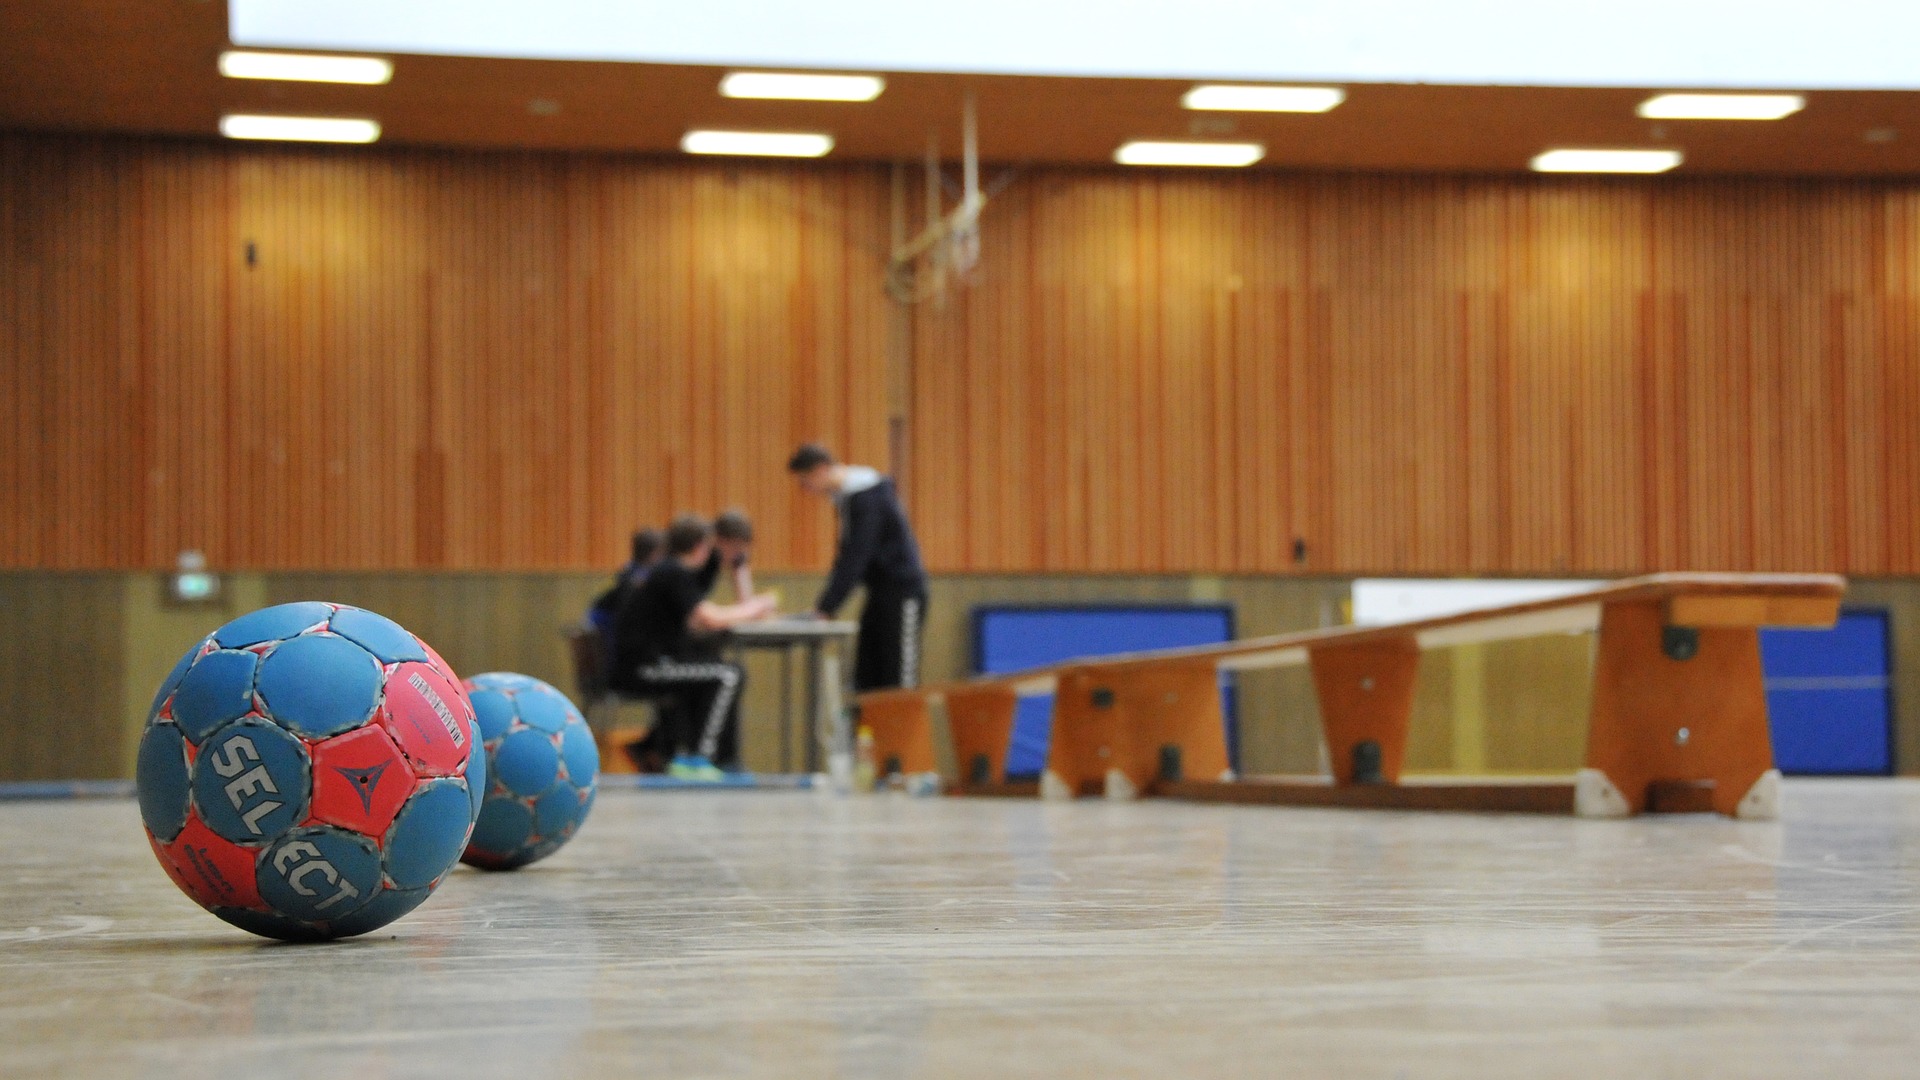 Die Fraktion DIE LINKE im Stadtrat Köthen informiert über Zuschüsse für Handball (HG85)